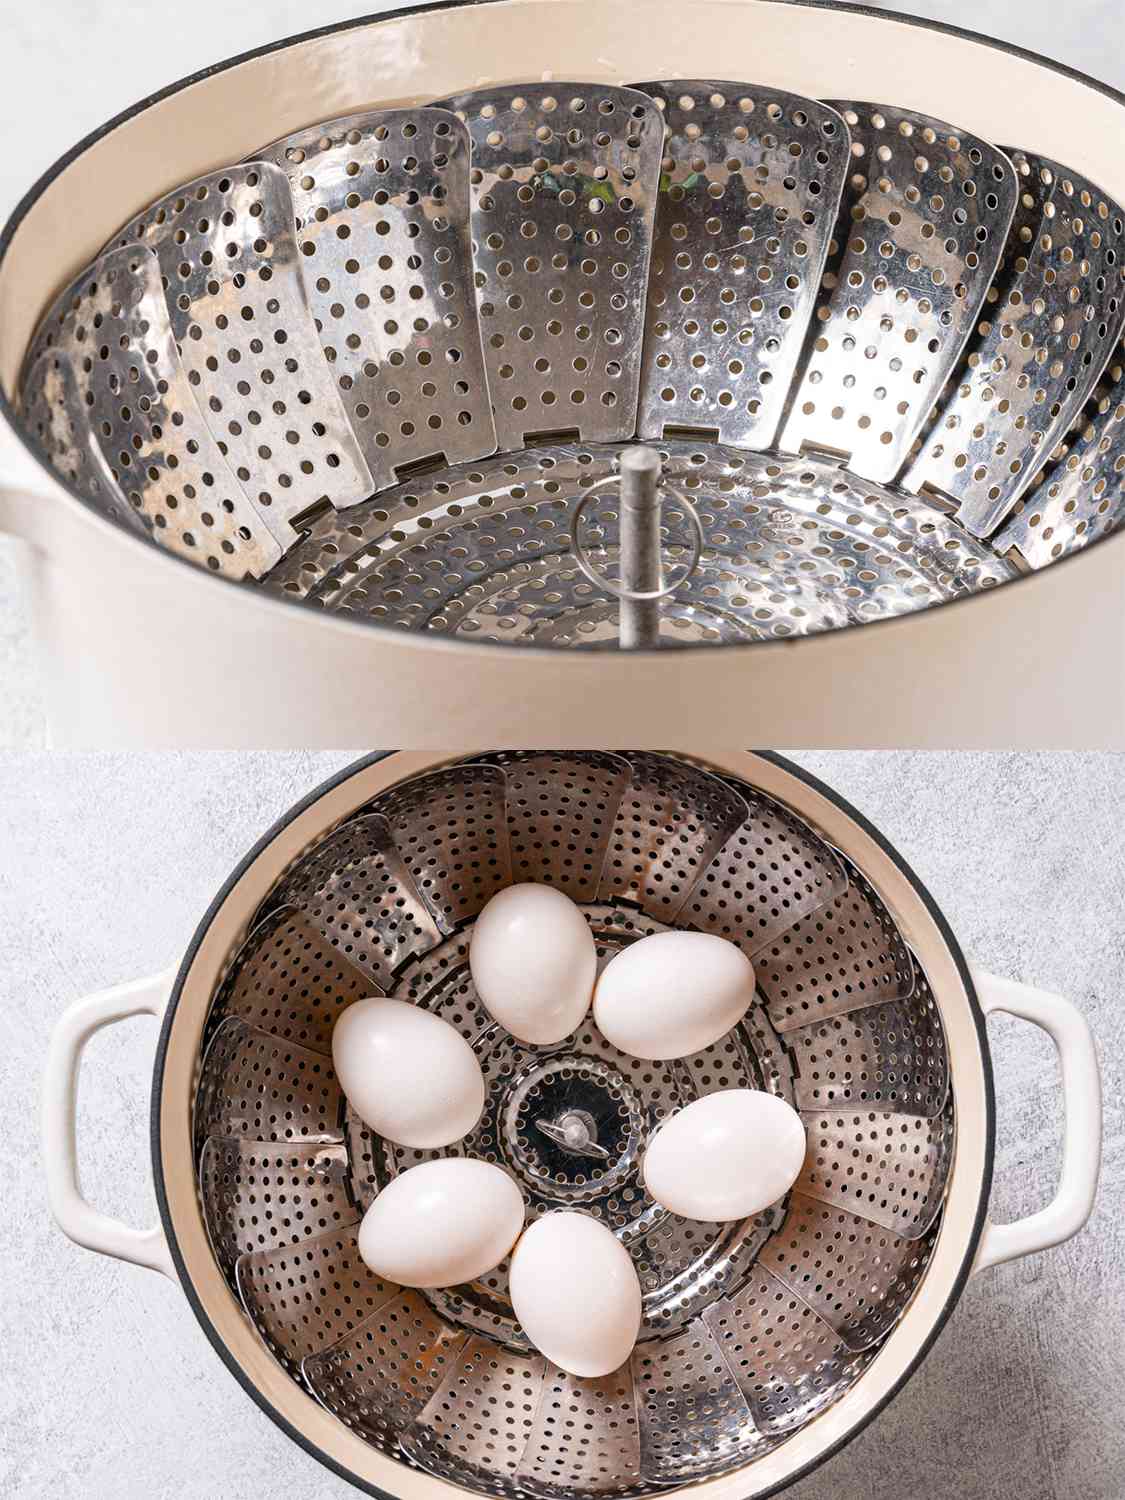 两幅图像的拼贴画。上面的图片显示了一个金属蒸篮子放在奶油色的荷兰烤箱里。下图显示了六个鸡蛋被放入蒸笼中。